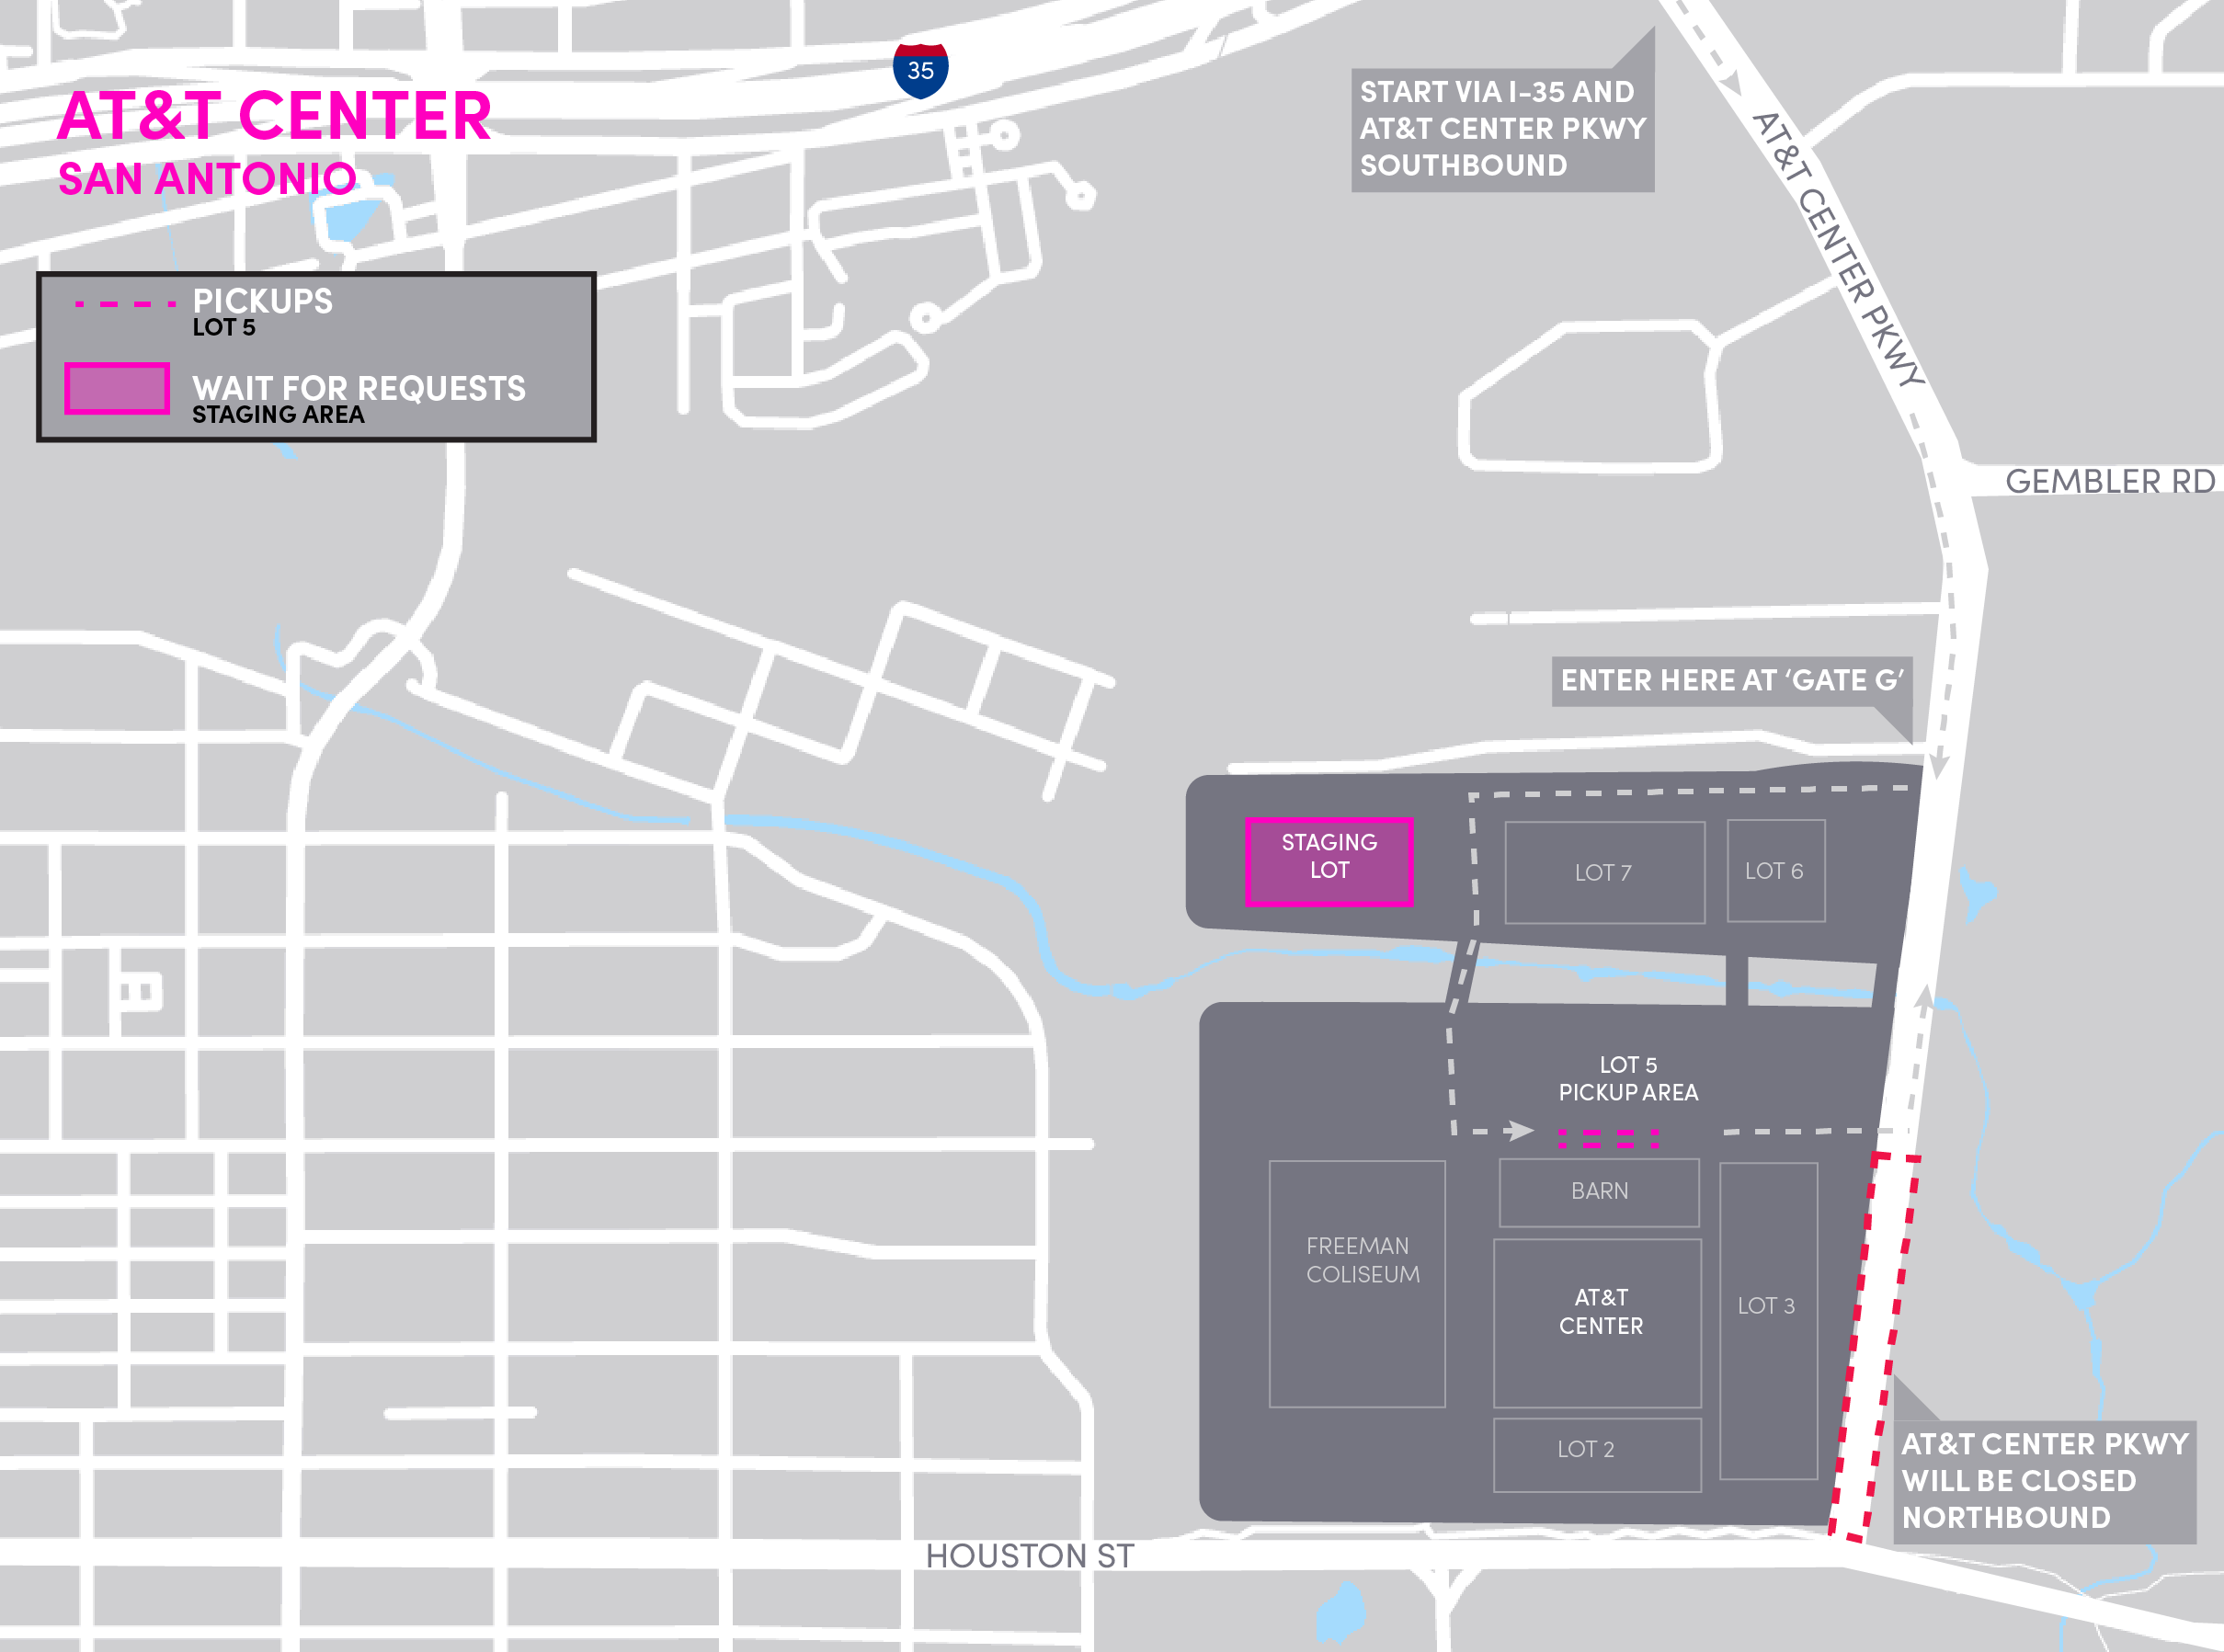 Mapa do AT&T Center em San Antonio, detalhando os locais de embarque e área de espera.